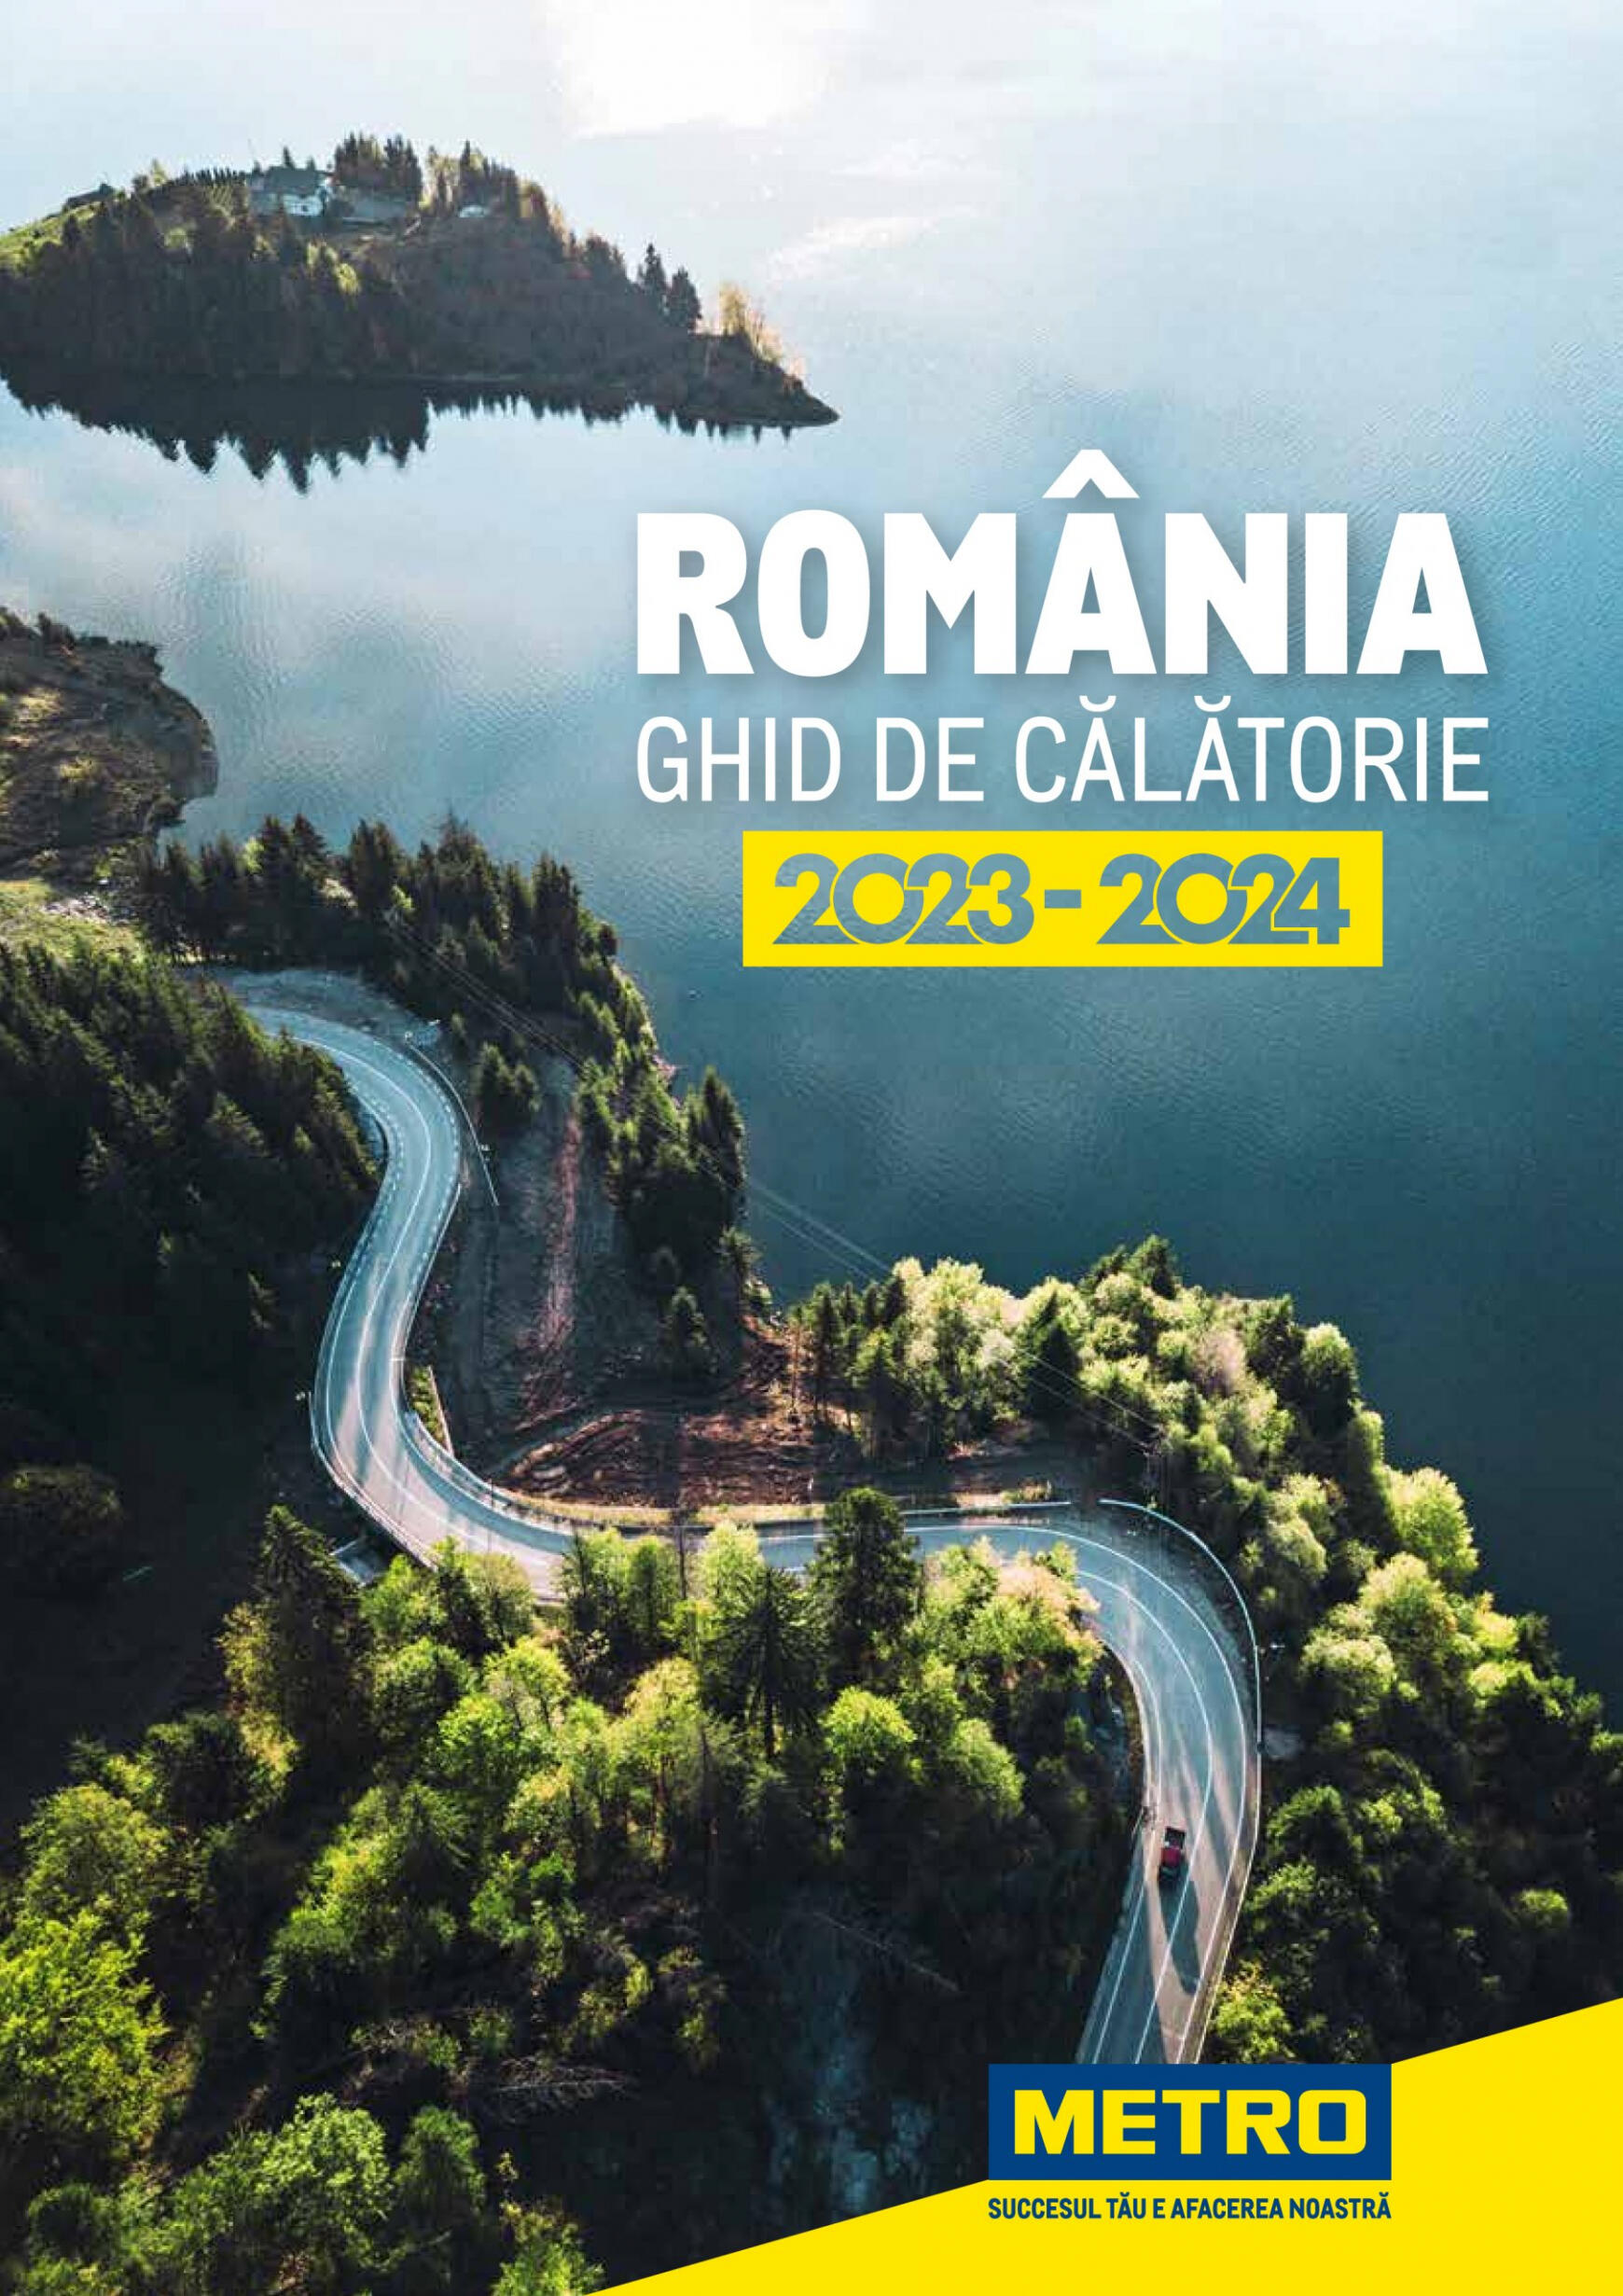 metro - Metro - Ghid de călătorie România 2024 valabil de 17.01.2024